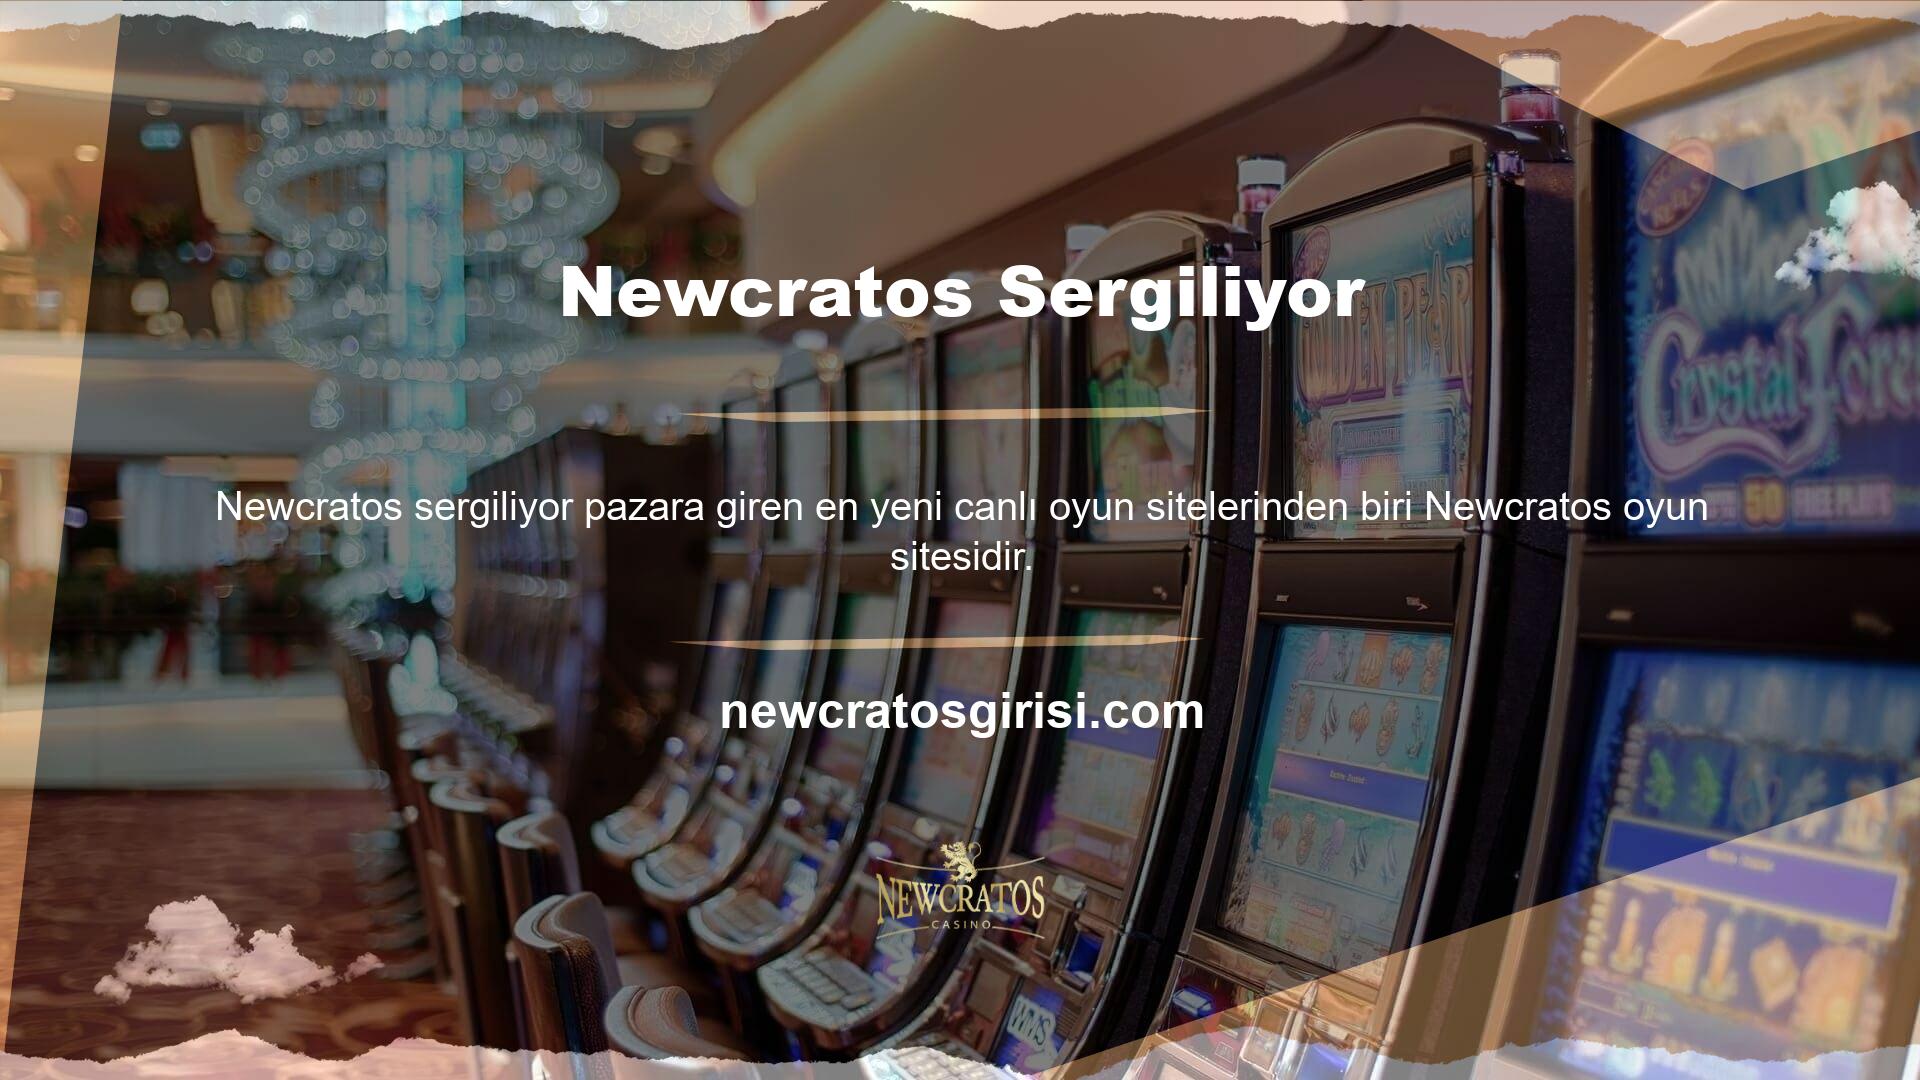 Ziyaretçiler ana sayfasında canlı bahis ve casino alanlarının yanı sıra at yarışı (Scottish Hot Wheels), bingo, poker, okey, tavla gibi çeşitli oyunları da oynayabilmektedir